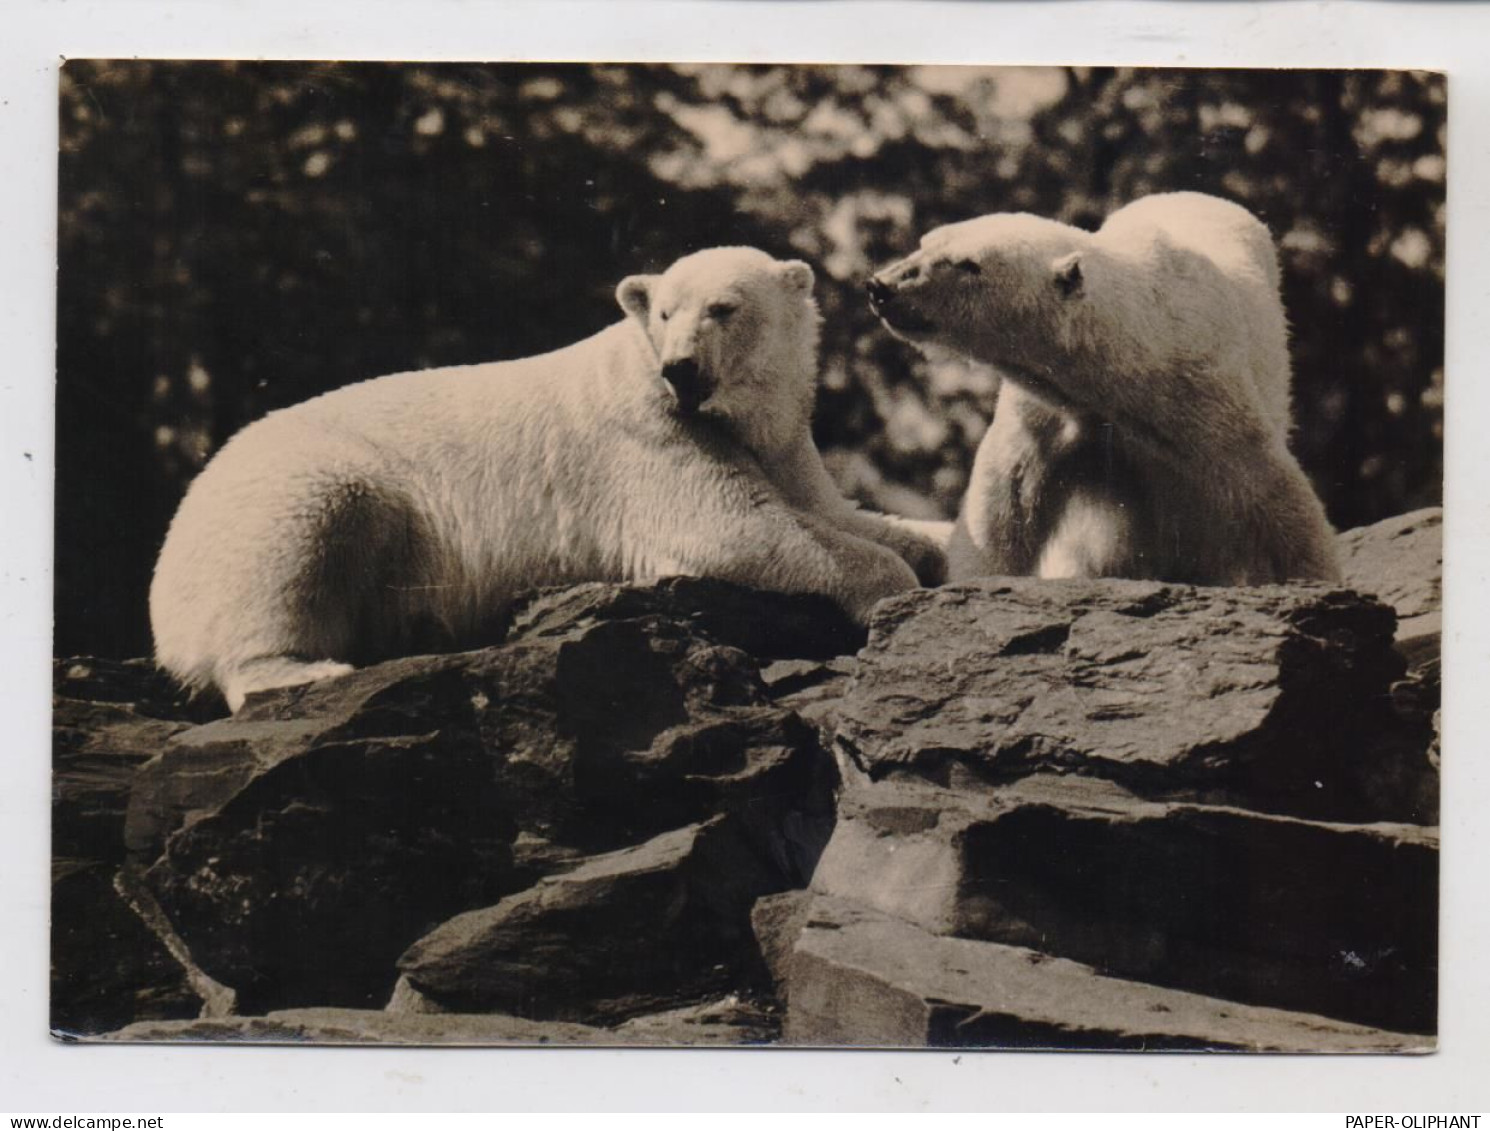 1000 BERLIN - FRIEDRICHSFELD, Tierpark Berlin (Zoo), Eisbären, 1963 - Hohenschönhausen